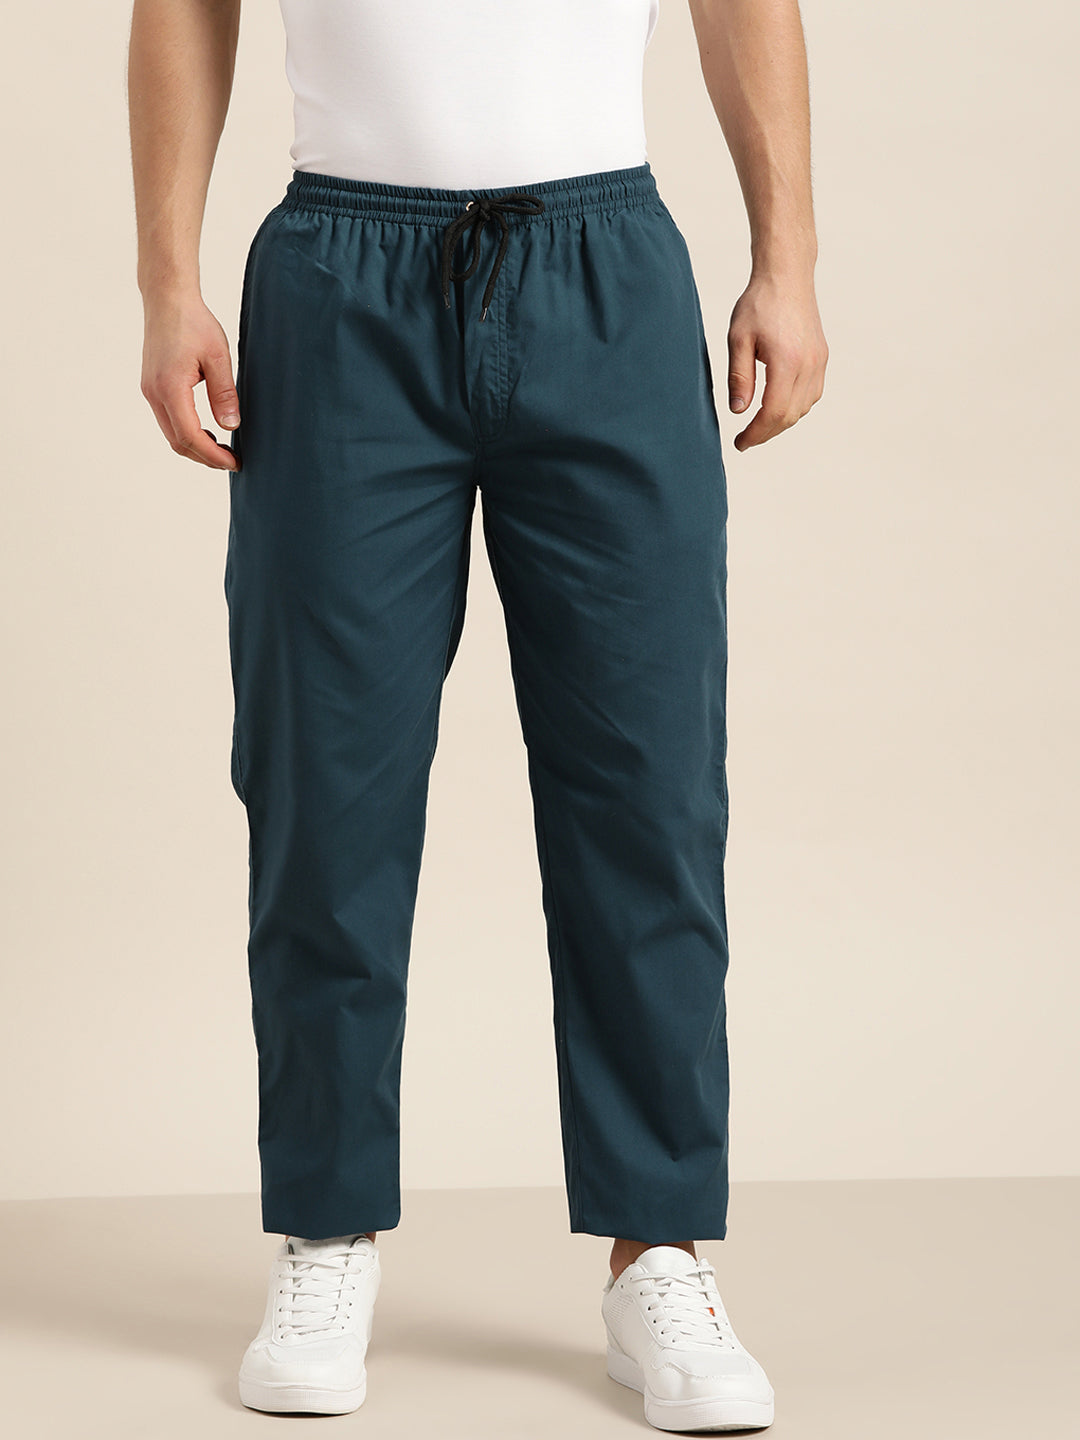 Men's Cotton Teal Blue Solid Track Pant  - Sojanya